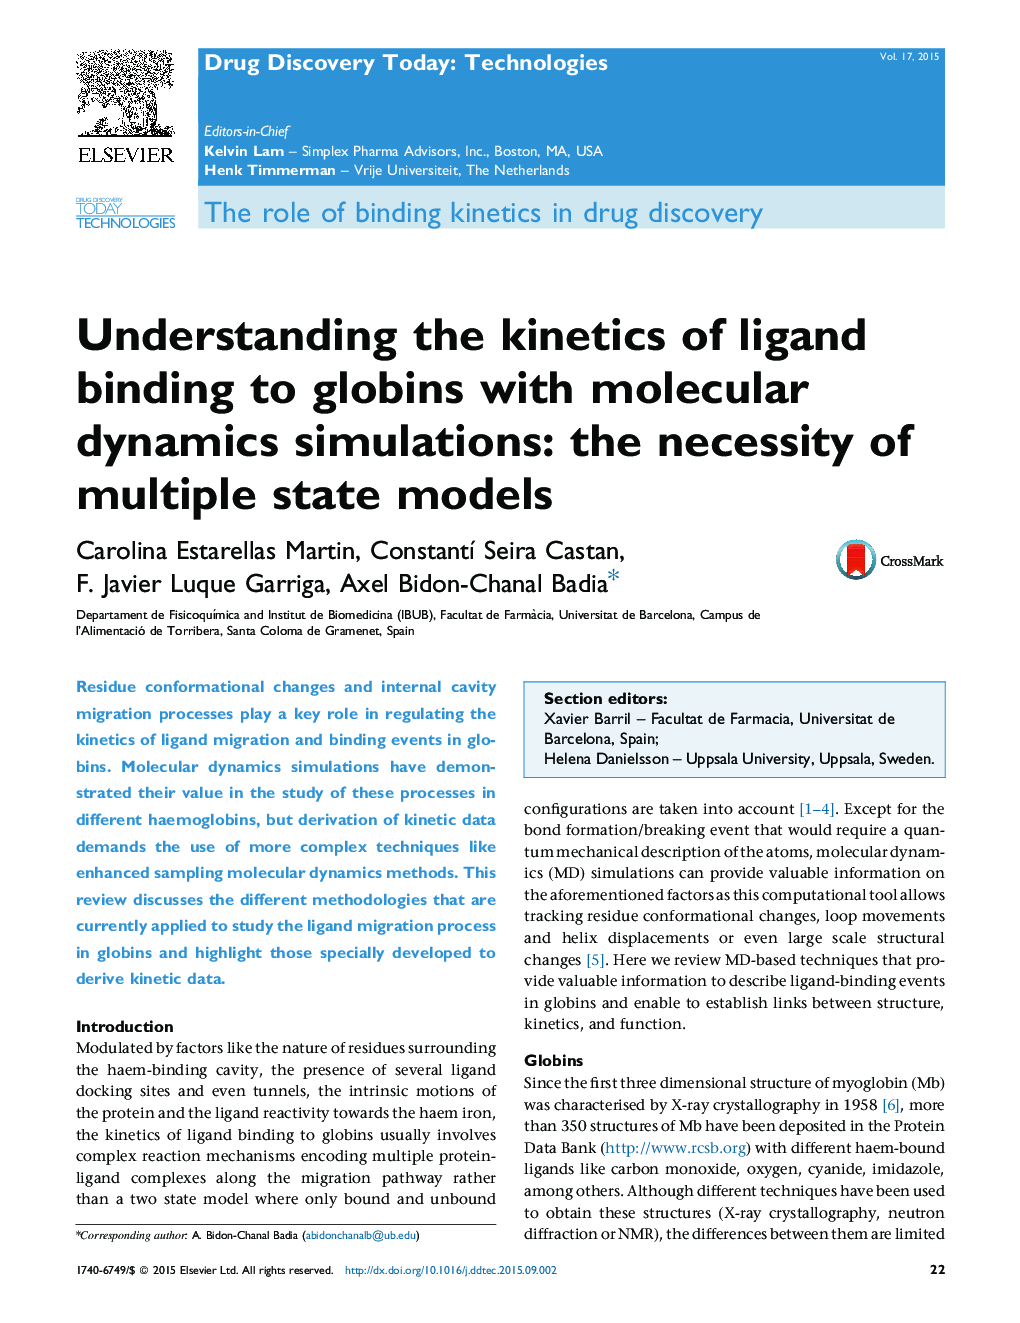 درک سینتیک اتصال لیگاند به گلوبین ها با شبیه سازی دینامیک مولکولی: ضرورت مدل های حالت های مختلف 